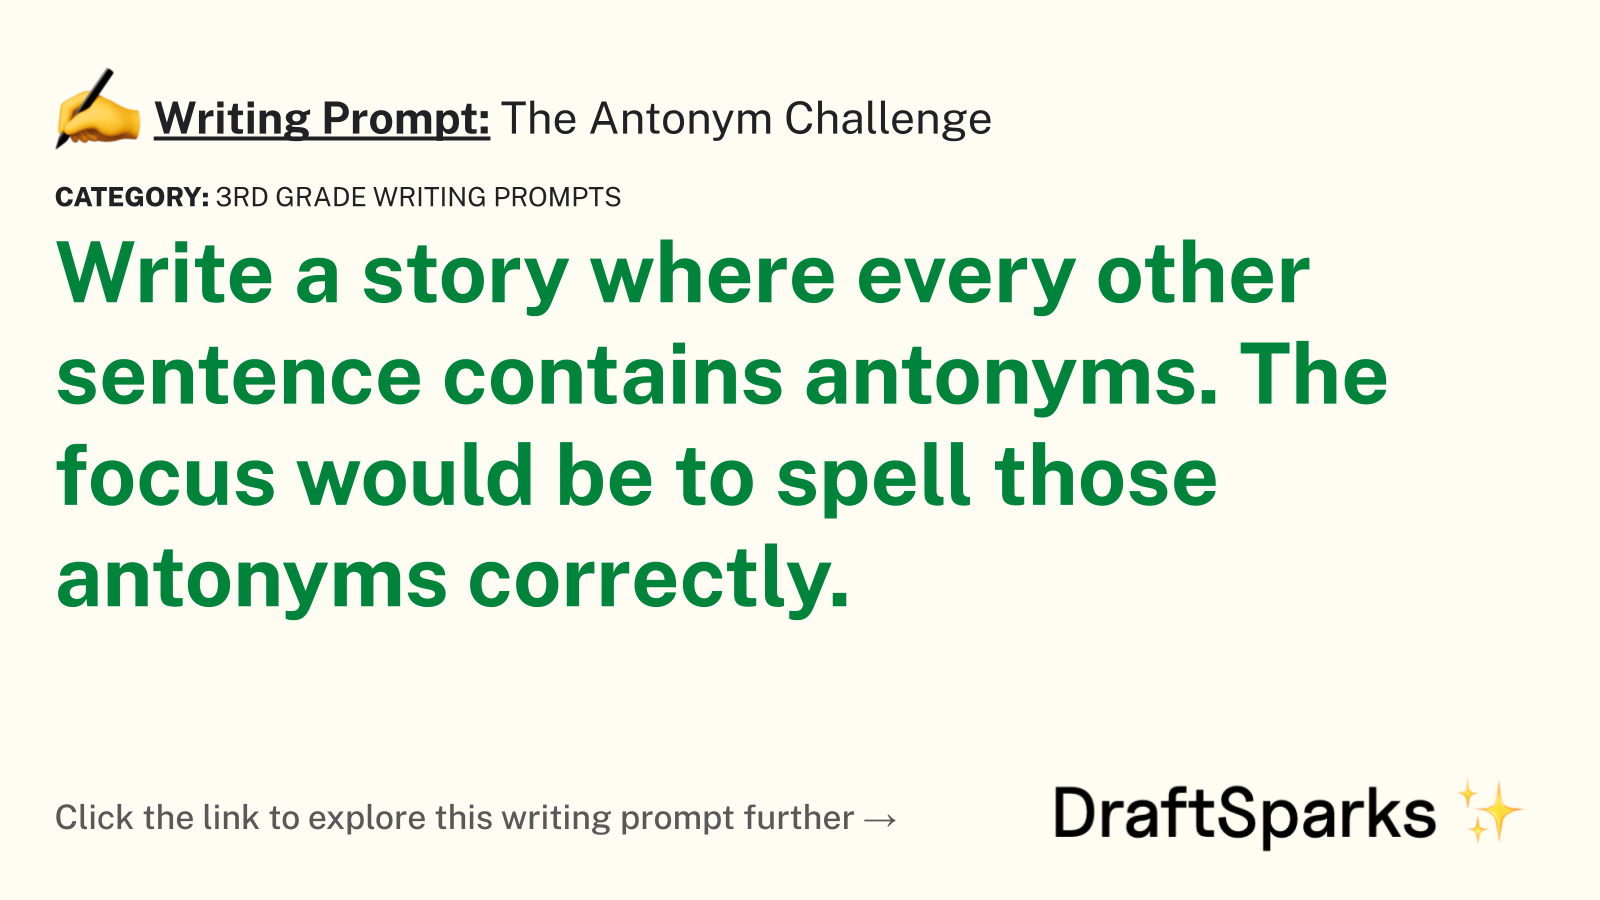 The Antonym Challenge